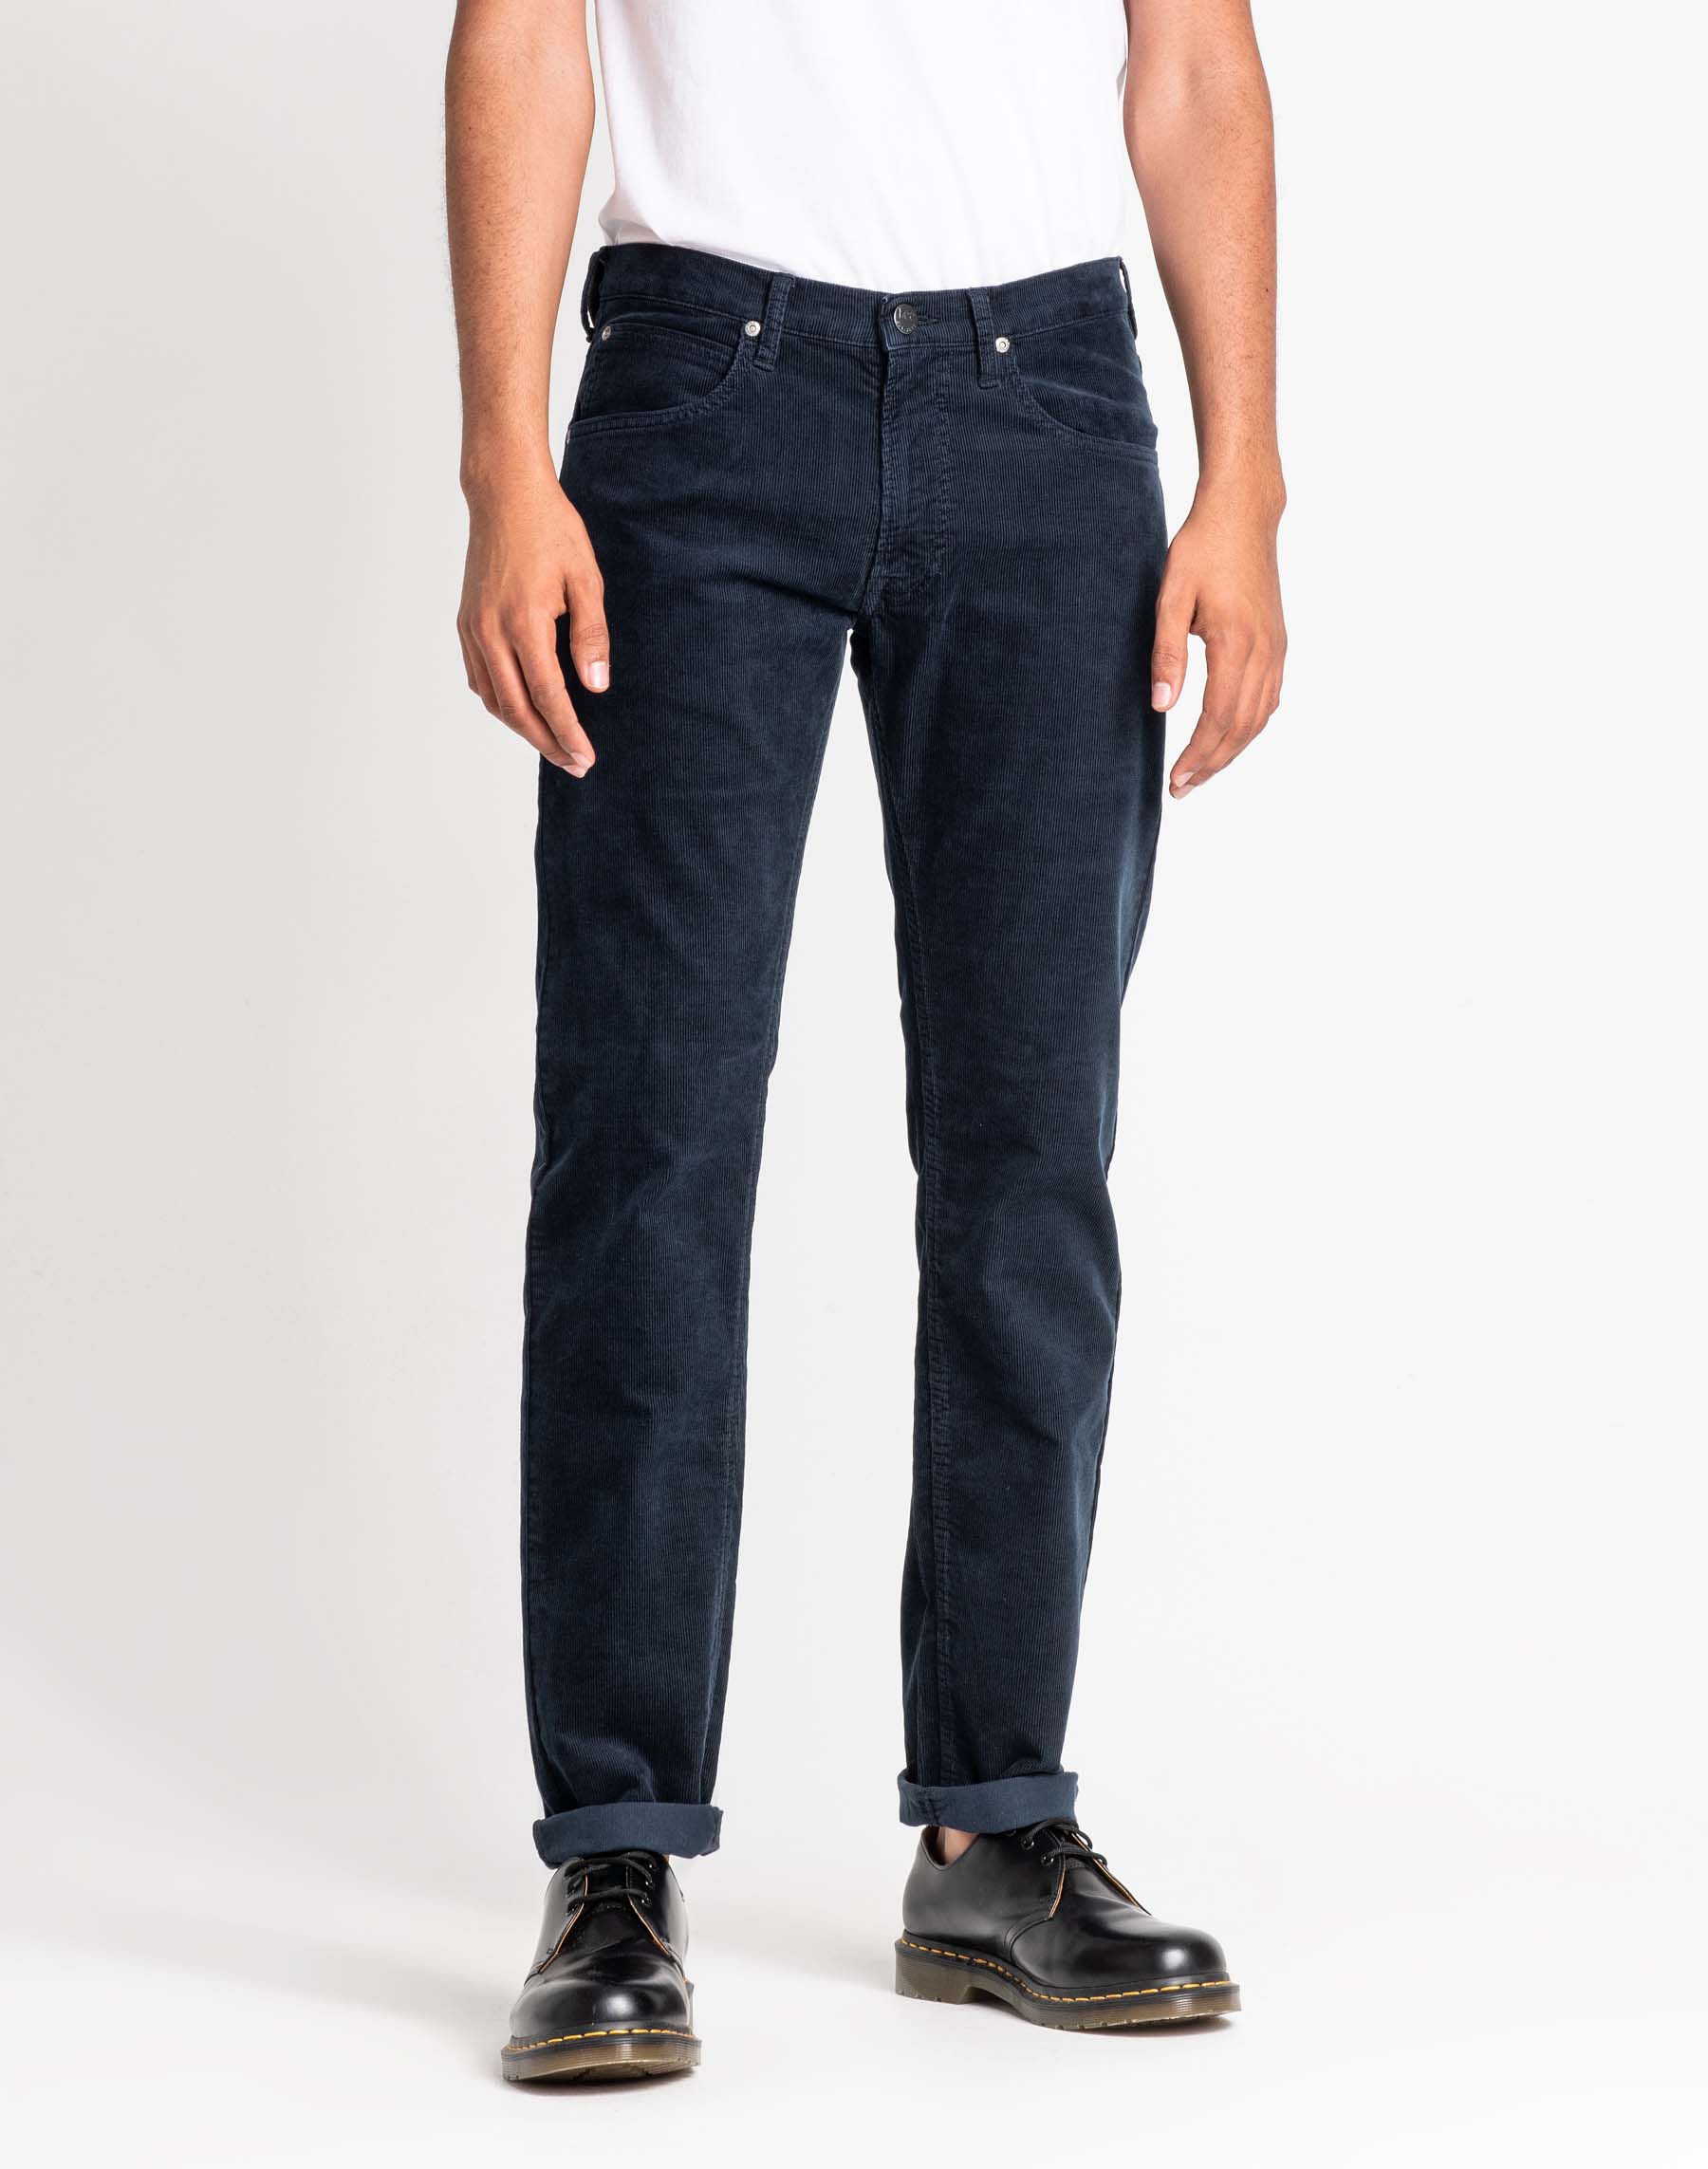 Lee Daren zip regular pantalons texans de pana d'home L707WJ21 blau marí